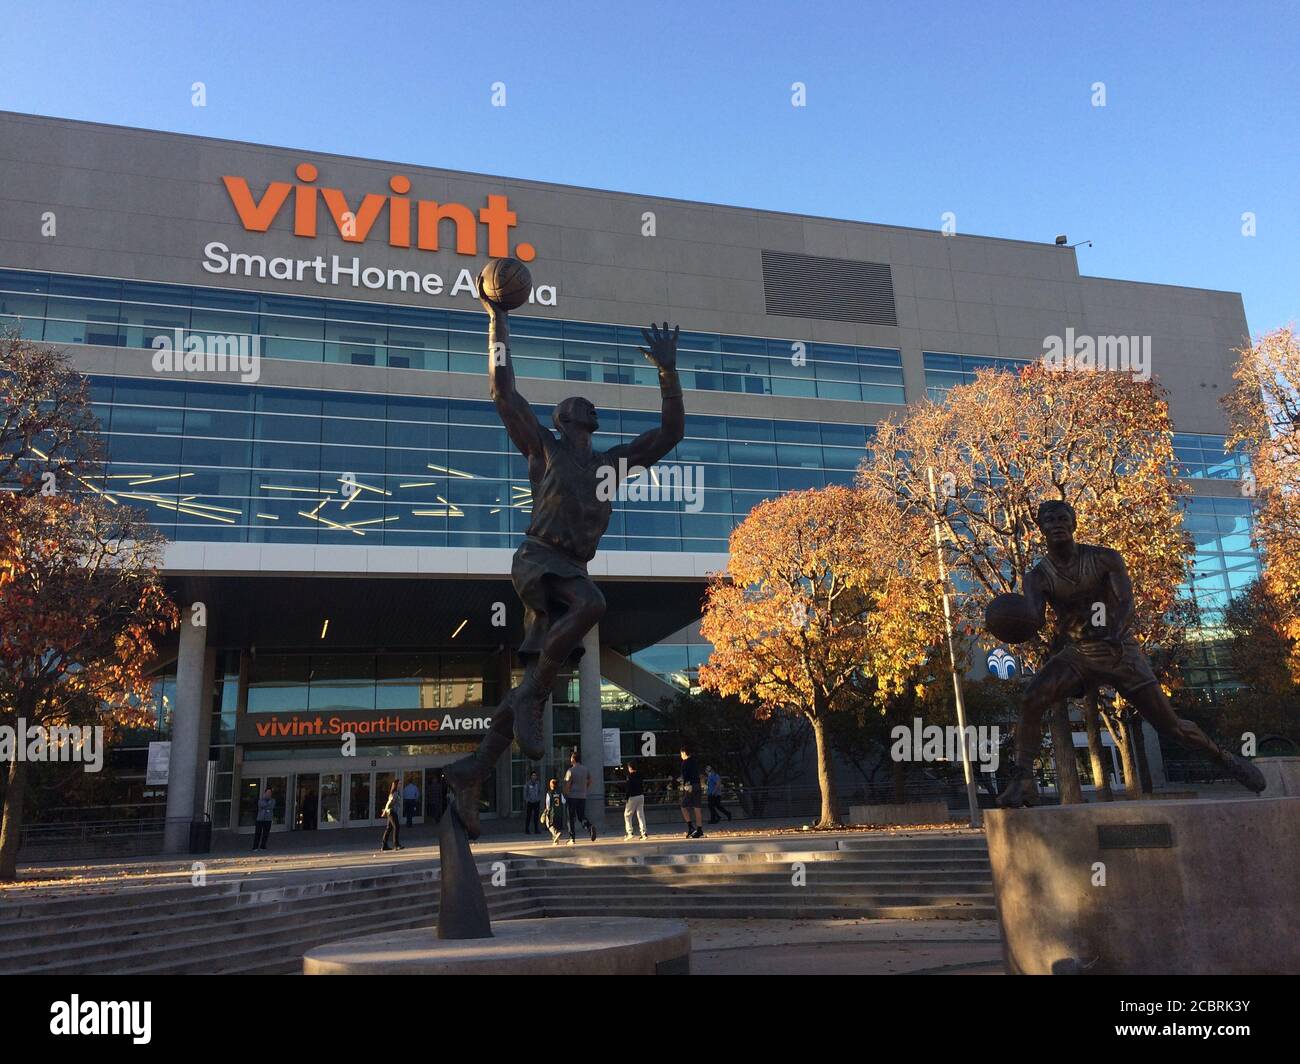 Vivint Smart Home Arena. Squadra di pallacanestro dell'NBA Utah Jazz gioca a casa in questa arena. Leggende del club Karl Malone e John Stockton statue. Foto Stock